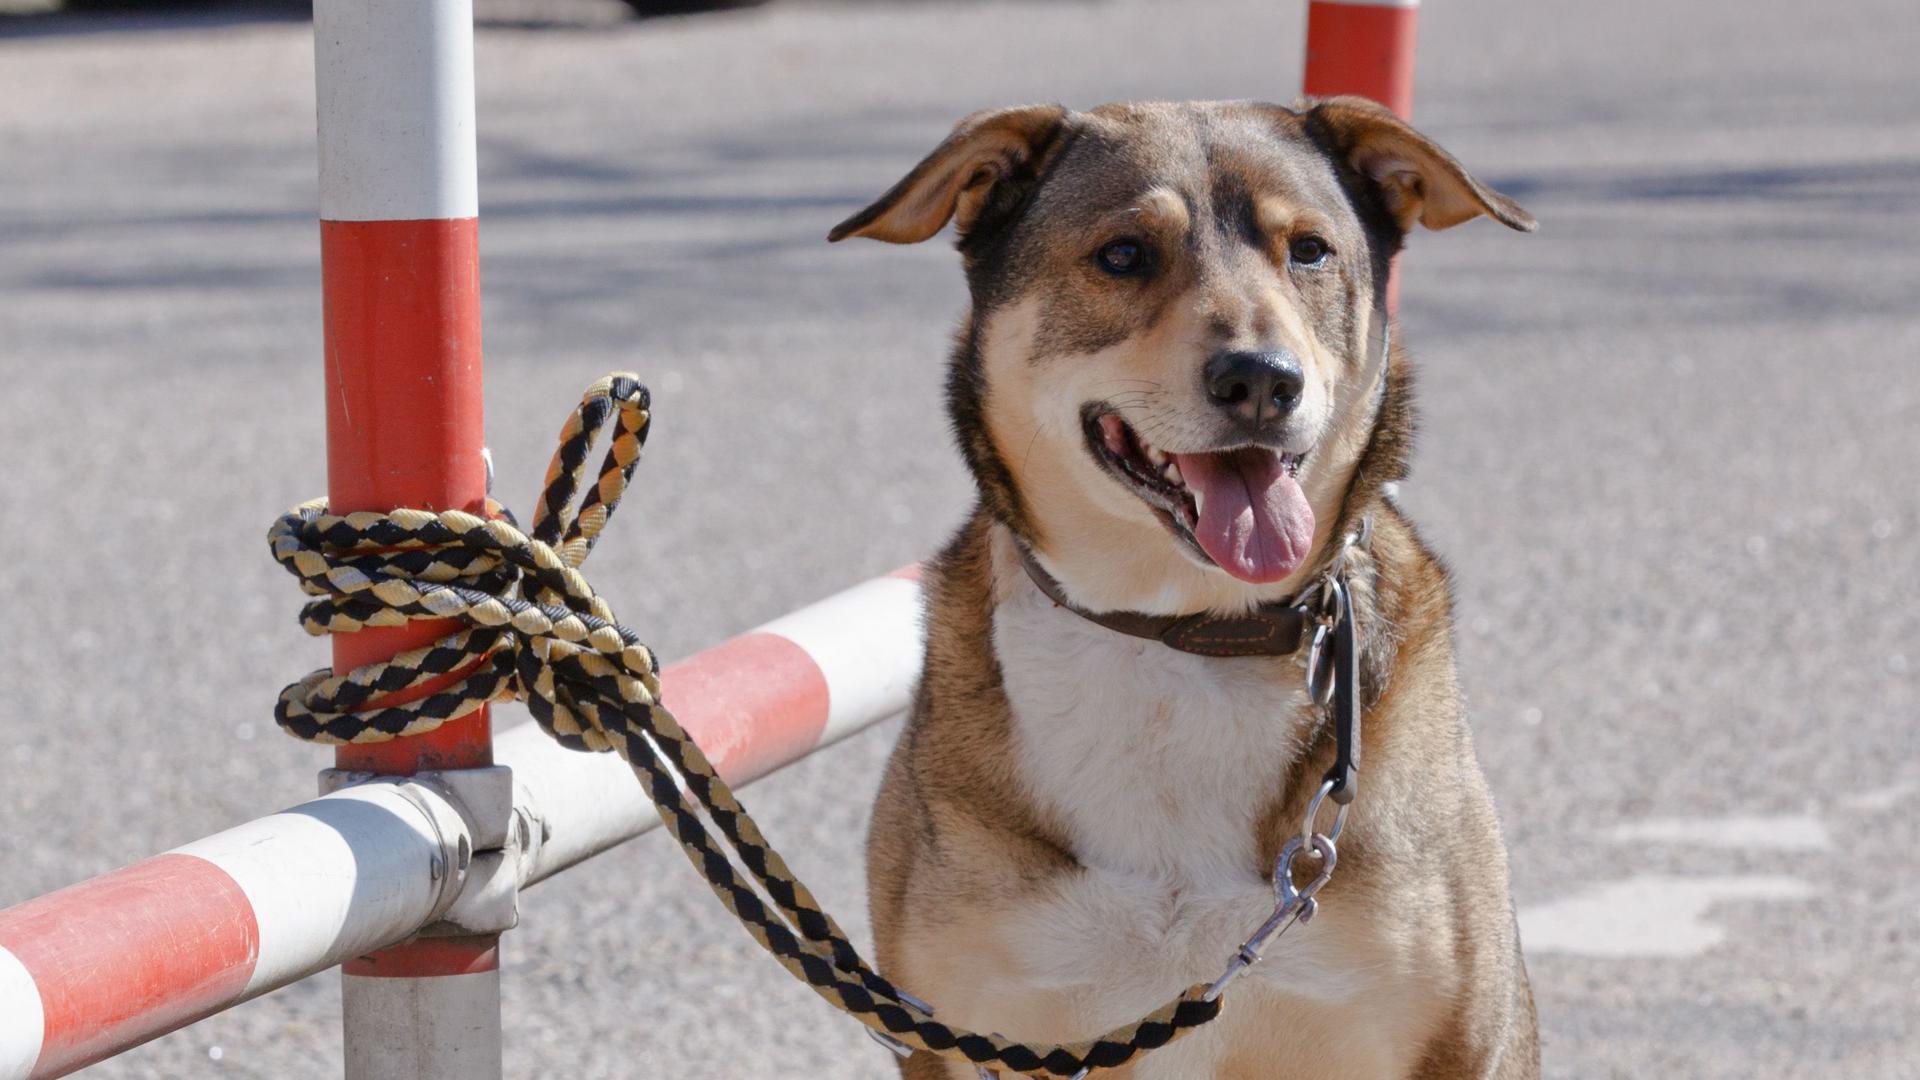 Ein Hund ist an einem rot-weiß gestreifen Zaun an einem Parkplatz angebunden. Seine Besitzer haben ihn ausgesetzt. 